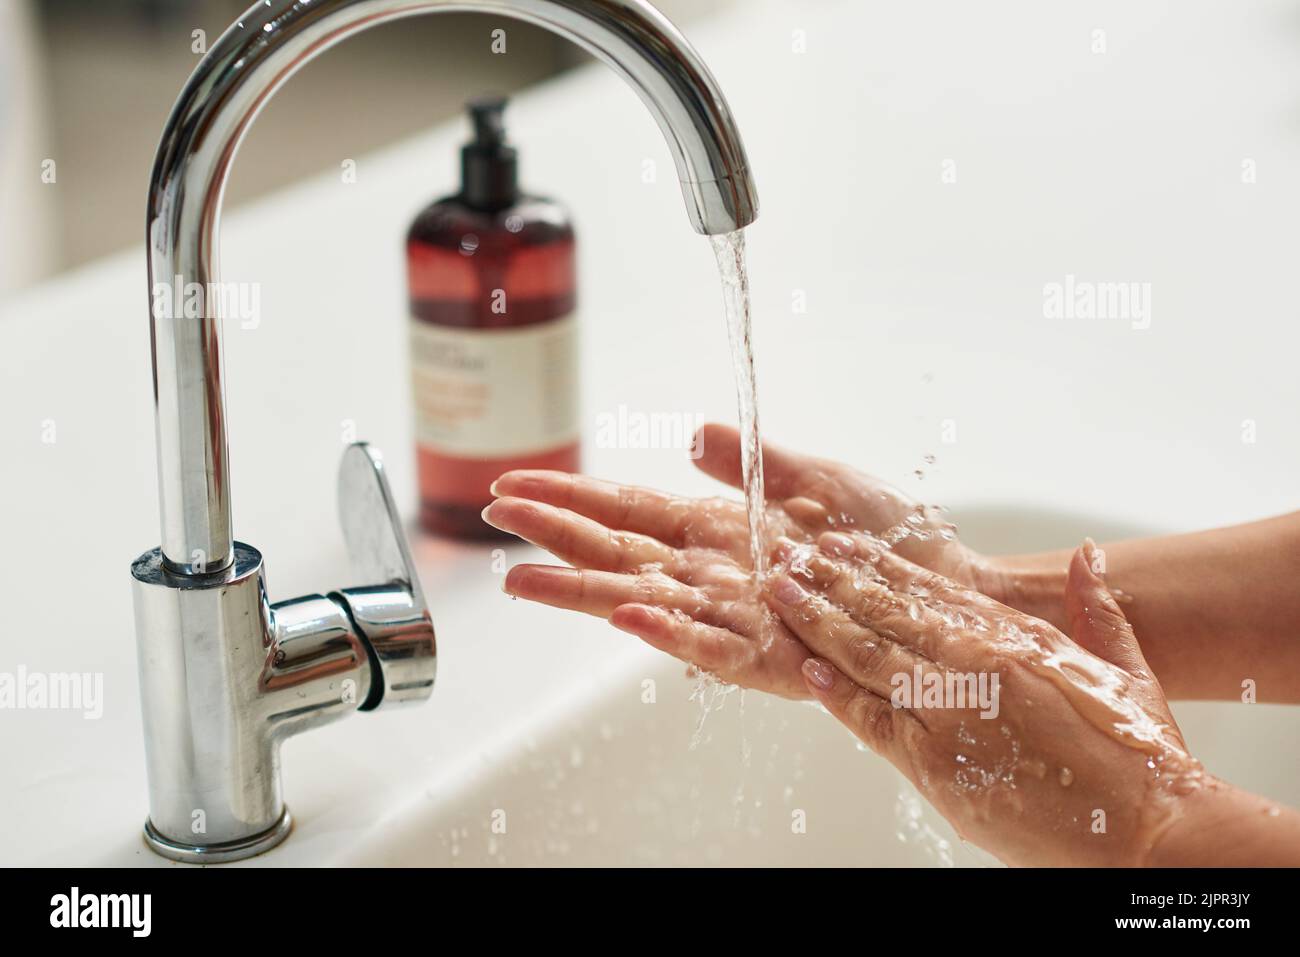 Waschen Sie immer Ihre Hände. Eine unkenntliche Frau, die ihre Hände unter fließendem Wasser wäscht. Stockfoto